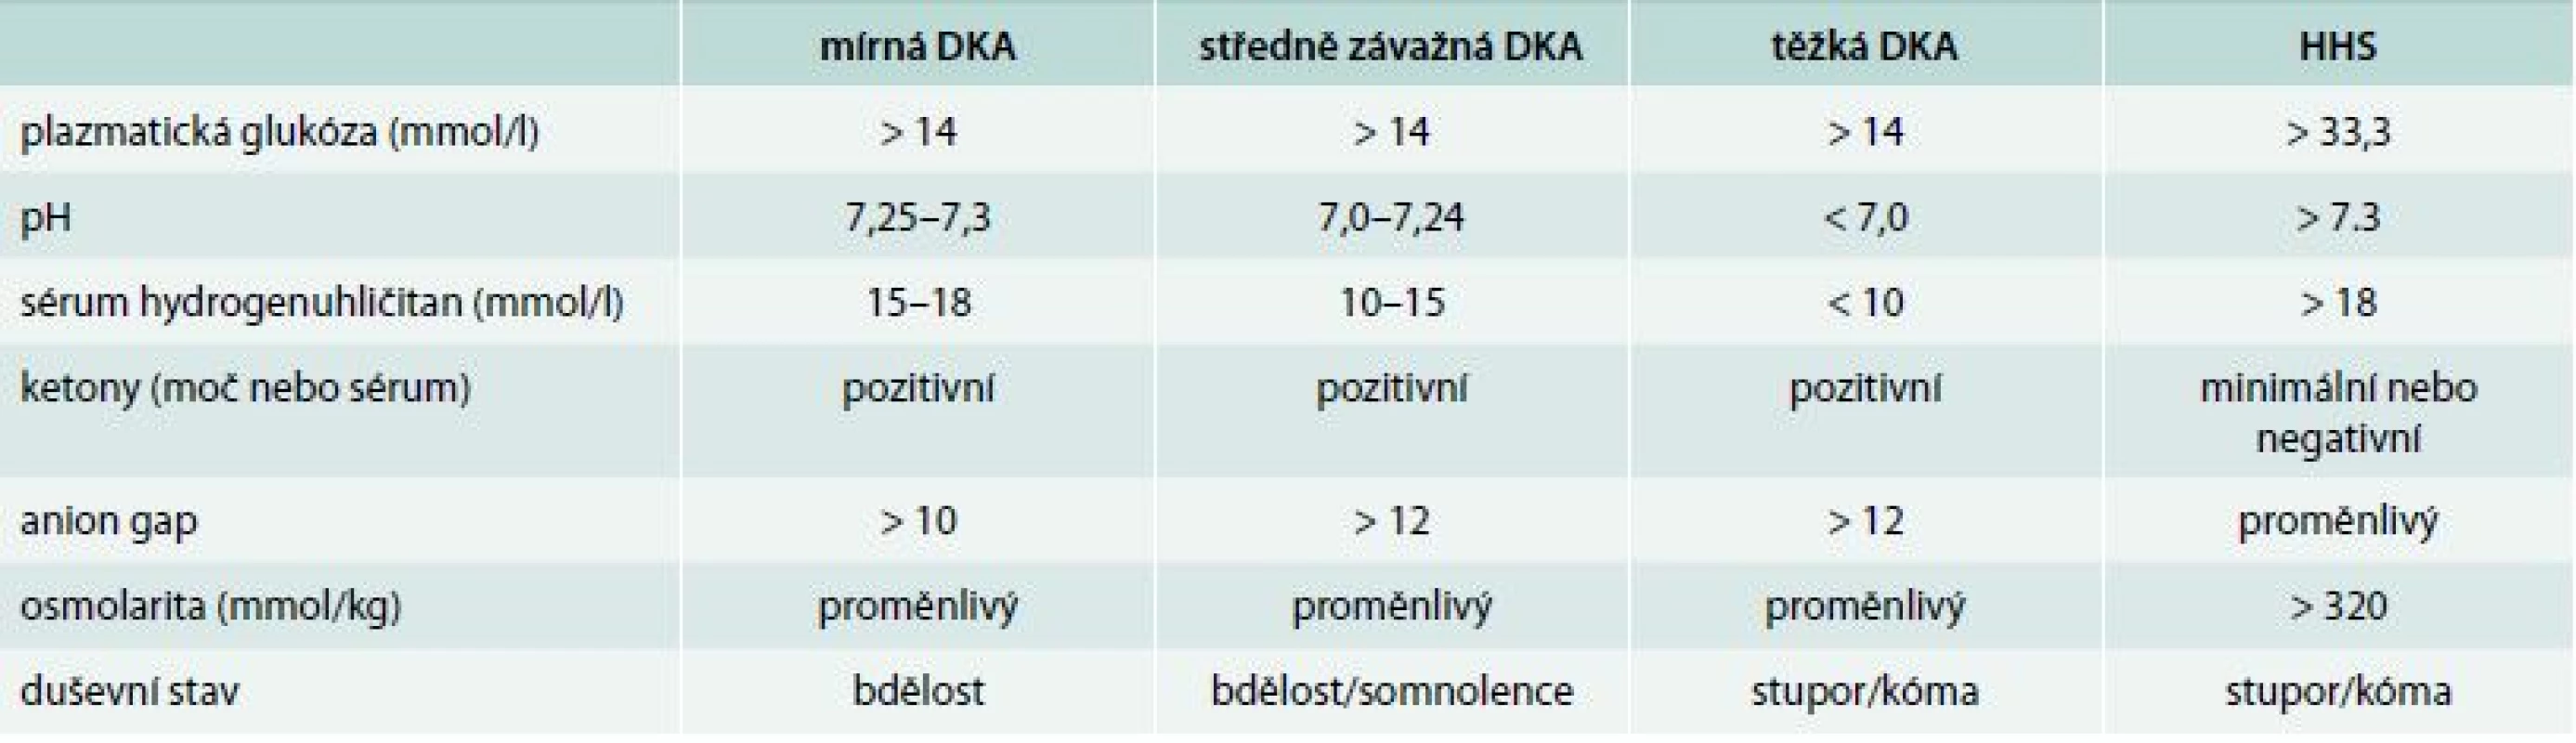 Diagnostická kritéria DKA a HHS. Upraveno podle [27]